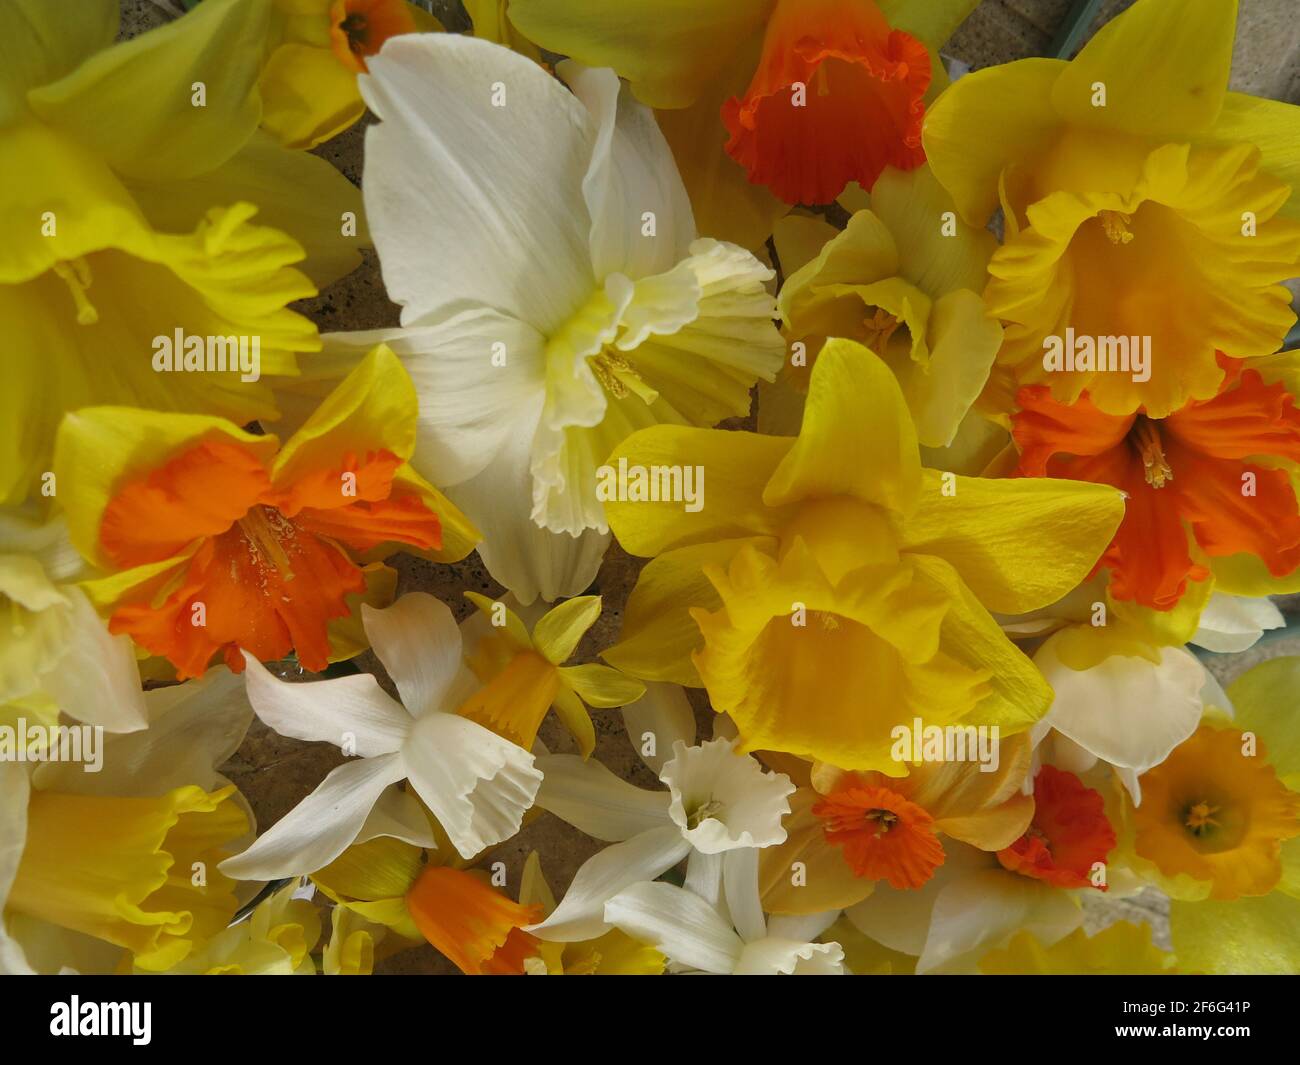 Nahaufnahme einer Masse von Narzissenblüten verschiedener Sorten, die nach oben auf einen Tisch gerichtet sind; gelb, orange und weiß. Stockfoto